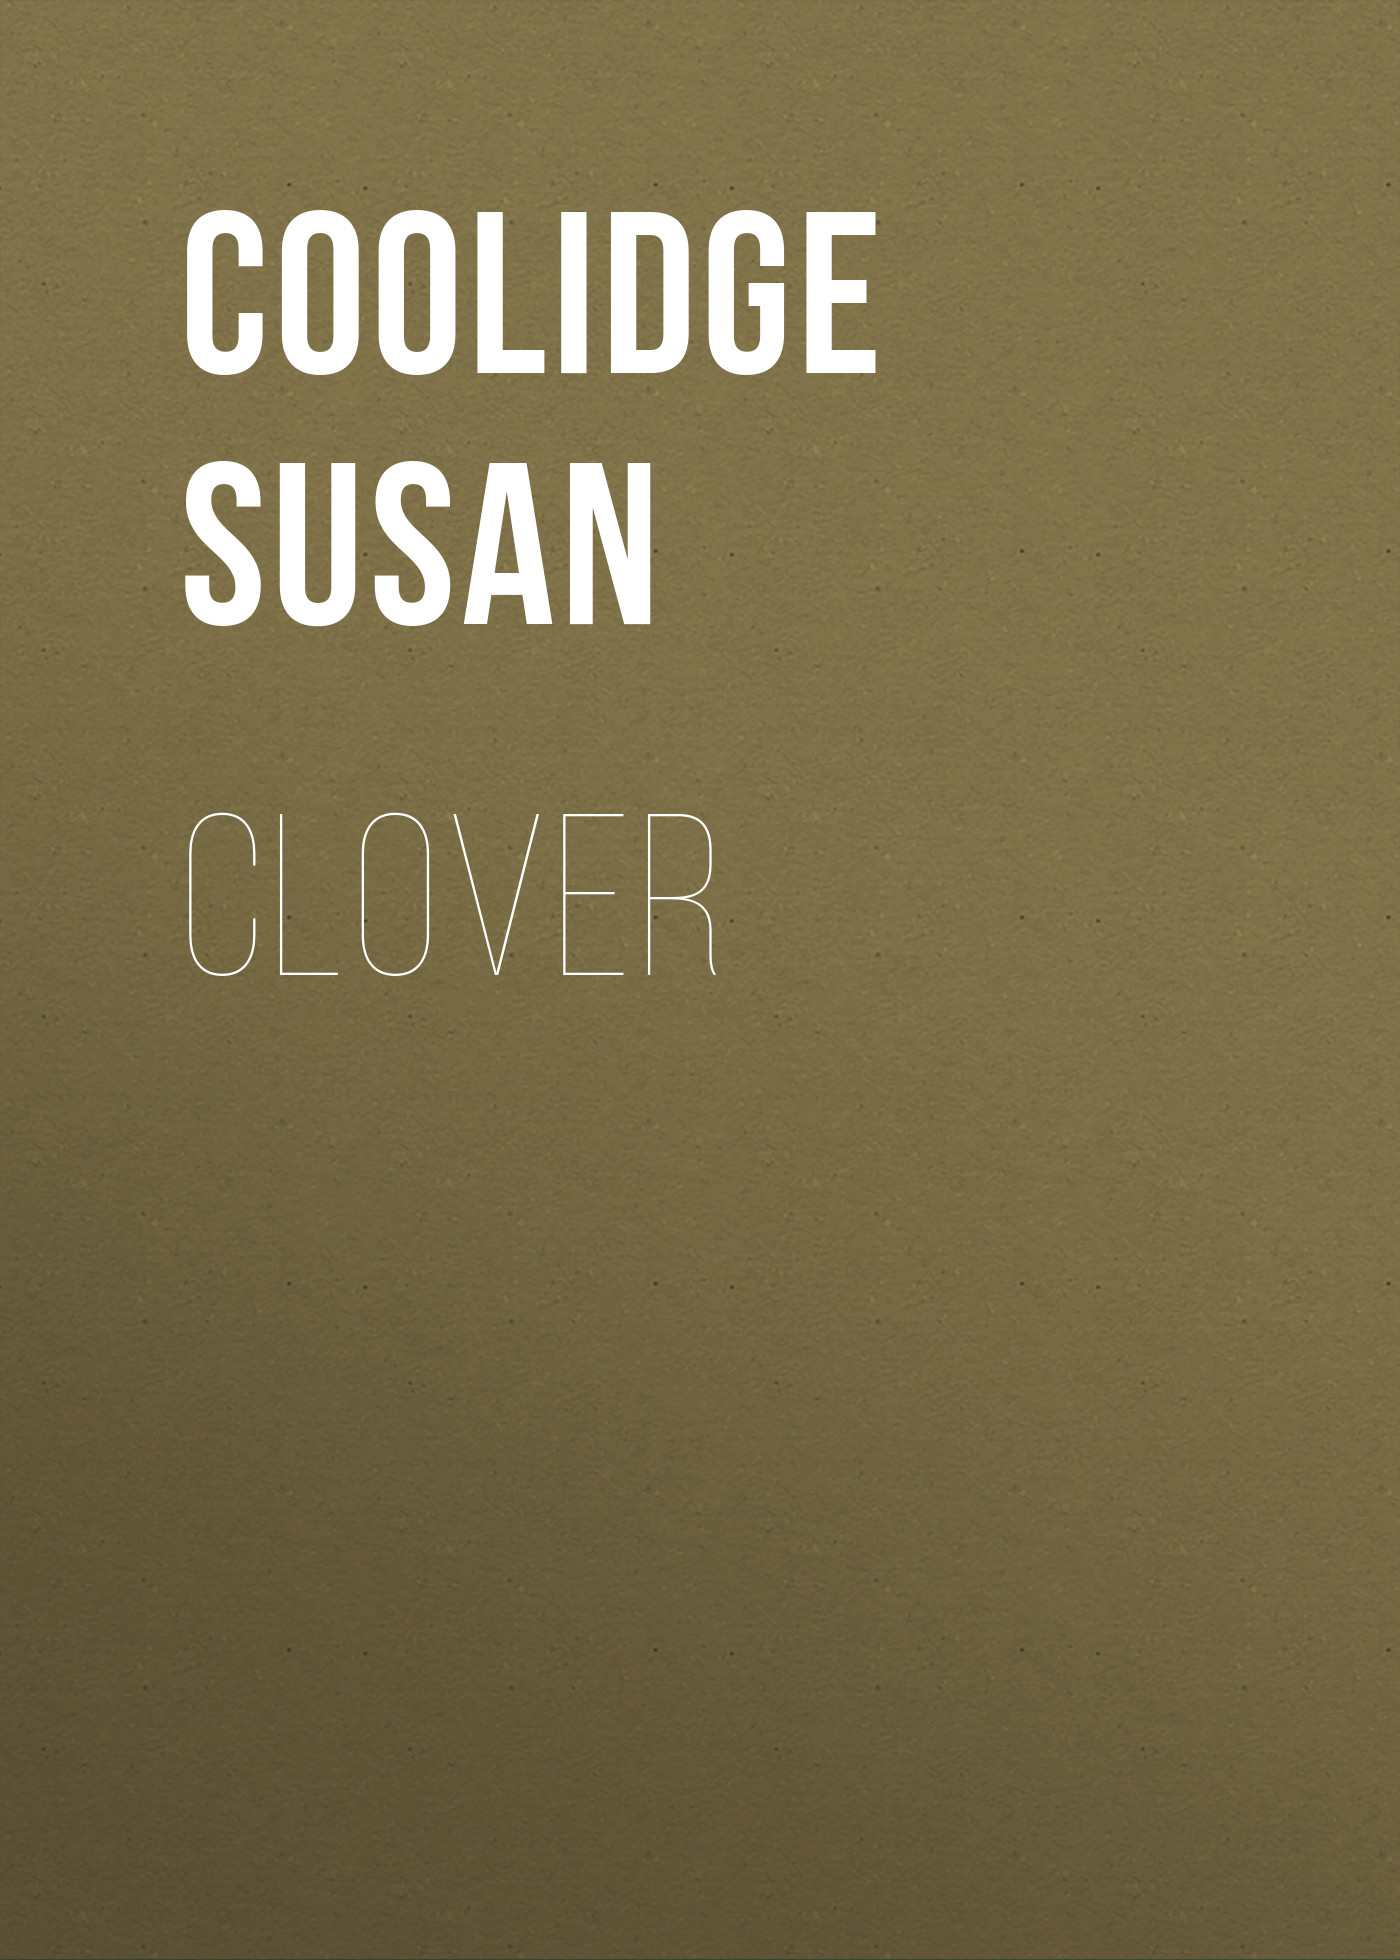 Книга Clover из серии , созданная Susan Coolidge, может относится к жанру Зарубежные детские книги, Литература 19 века, Зарубежная старинная литература, Зарубежная классика. Стоимость электронной книги Clover с идентификатором 36323892 составляет 0 руб.